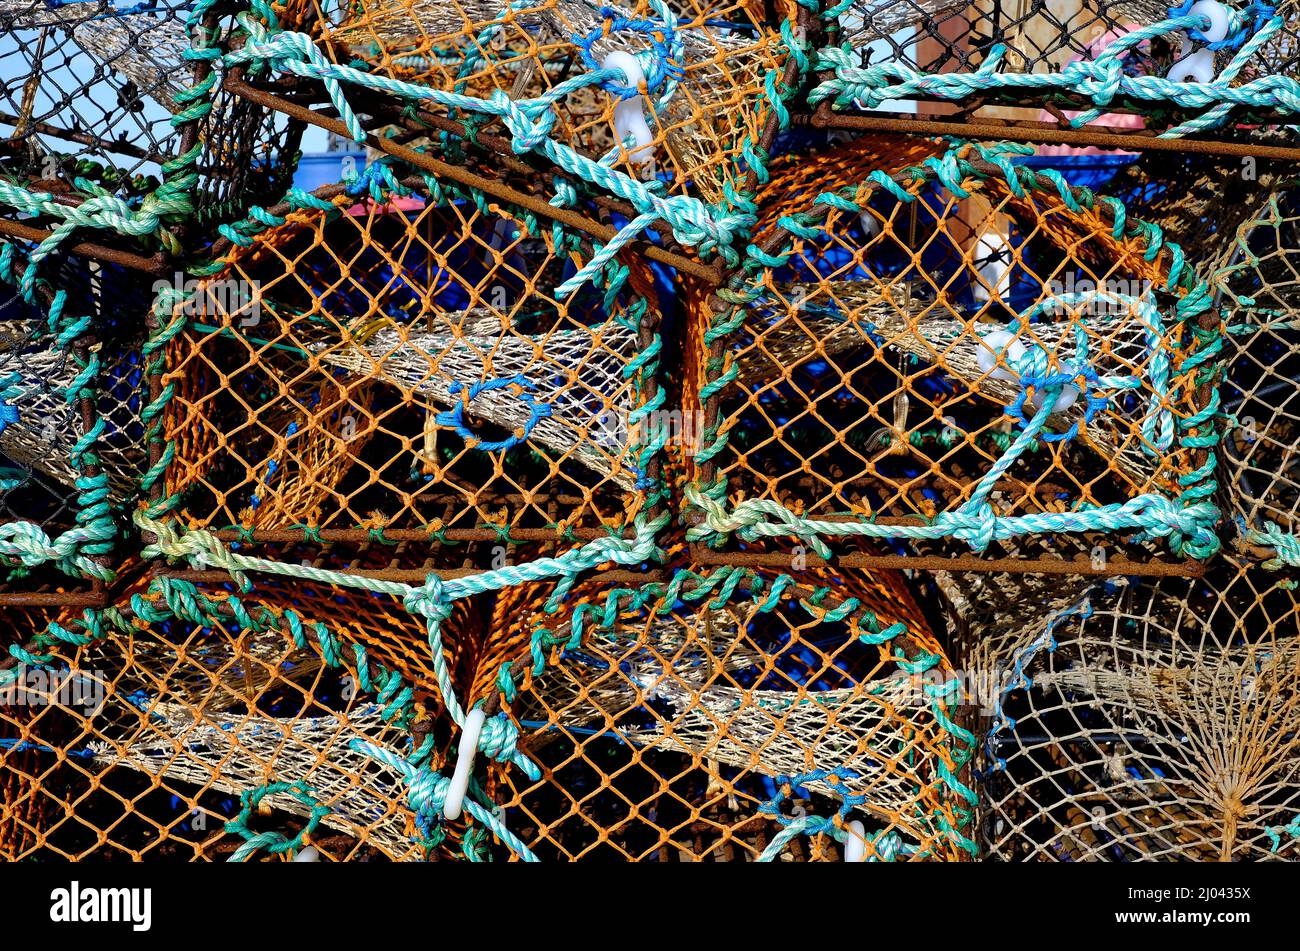 pila de ollas de cangrejo de langosta, al lado del mar, al norte de norfolk, inglaterra Foto de stock